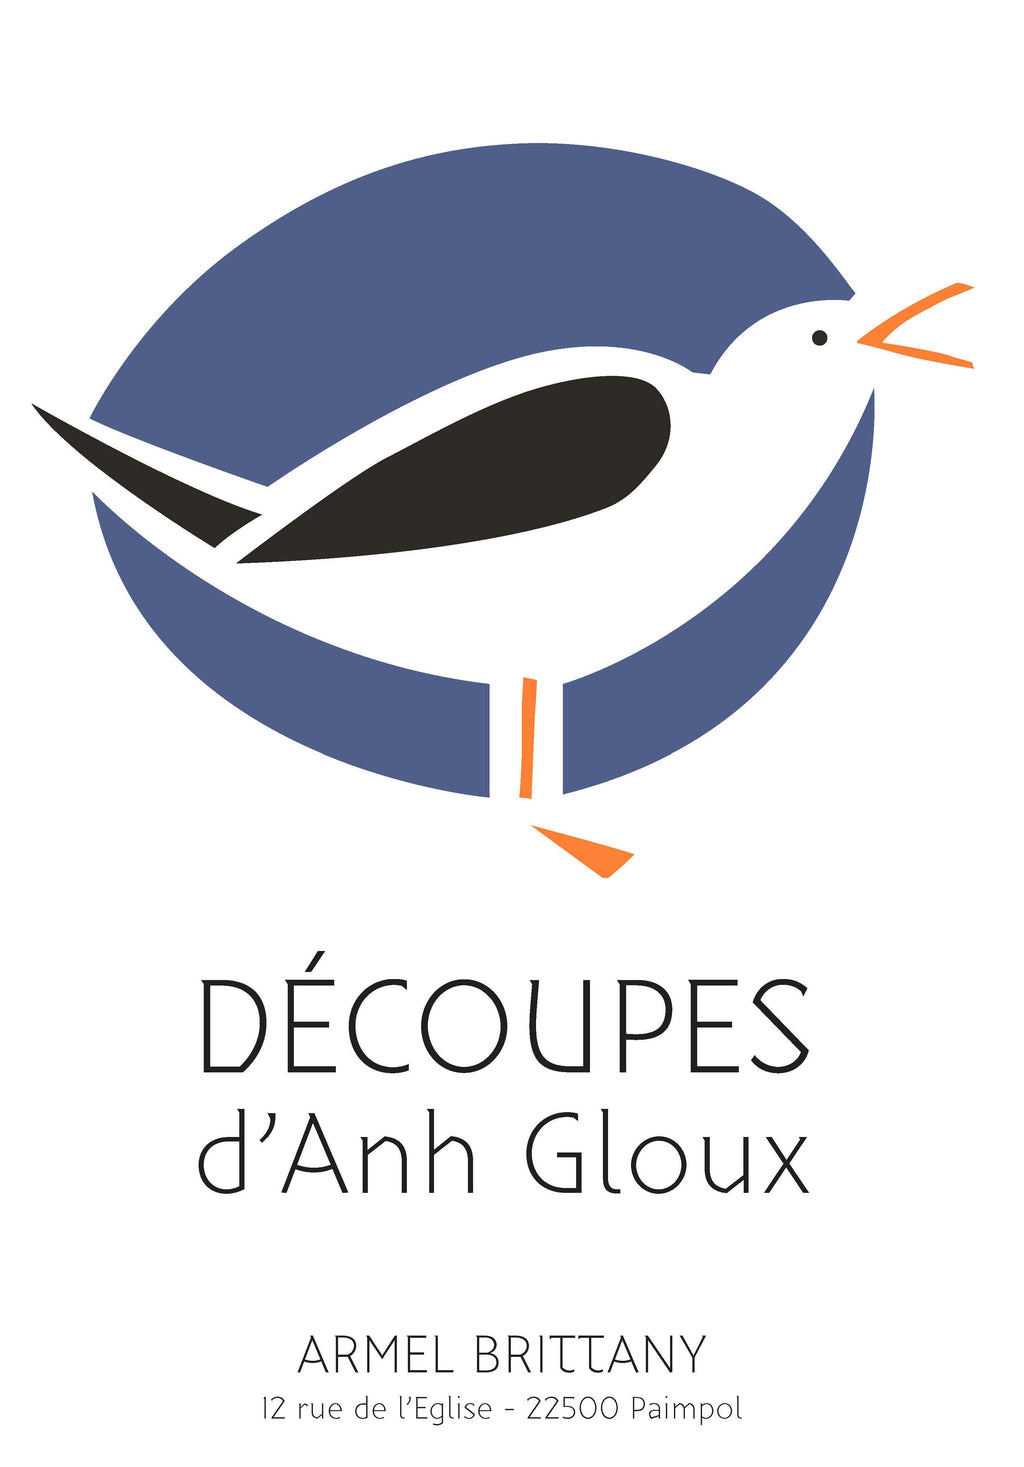 Anh Gloux mouette affiche de décoration poster représente une mouette bretonne. armel brittany marque bretagne